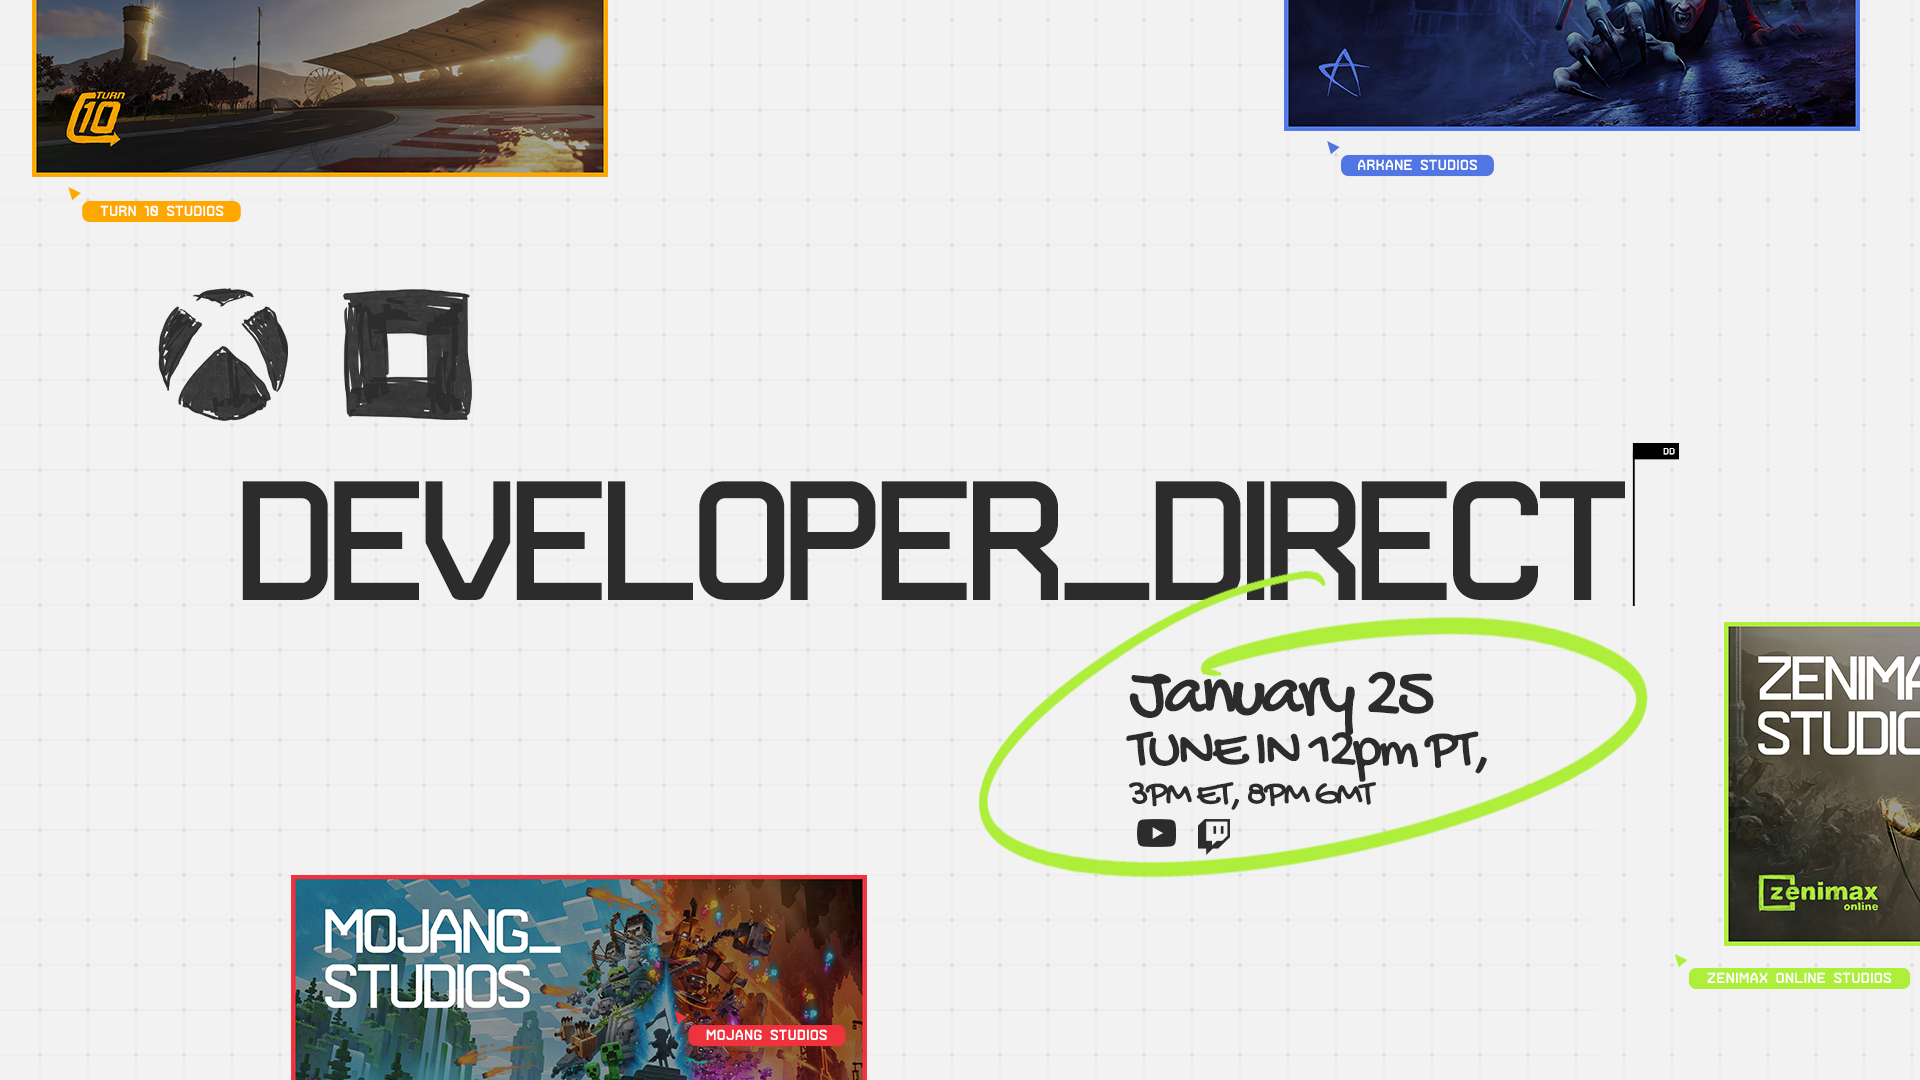 Xbox و Bethesda پخش زنده Developer_Direct را در 25 ژانویه ارائه می کنند